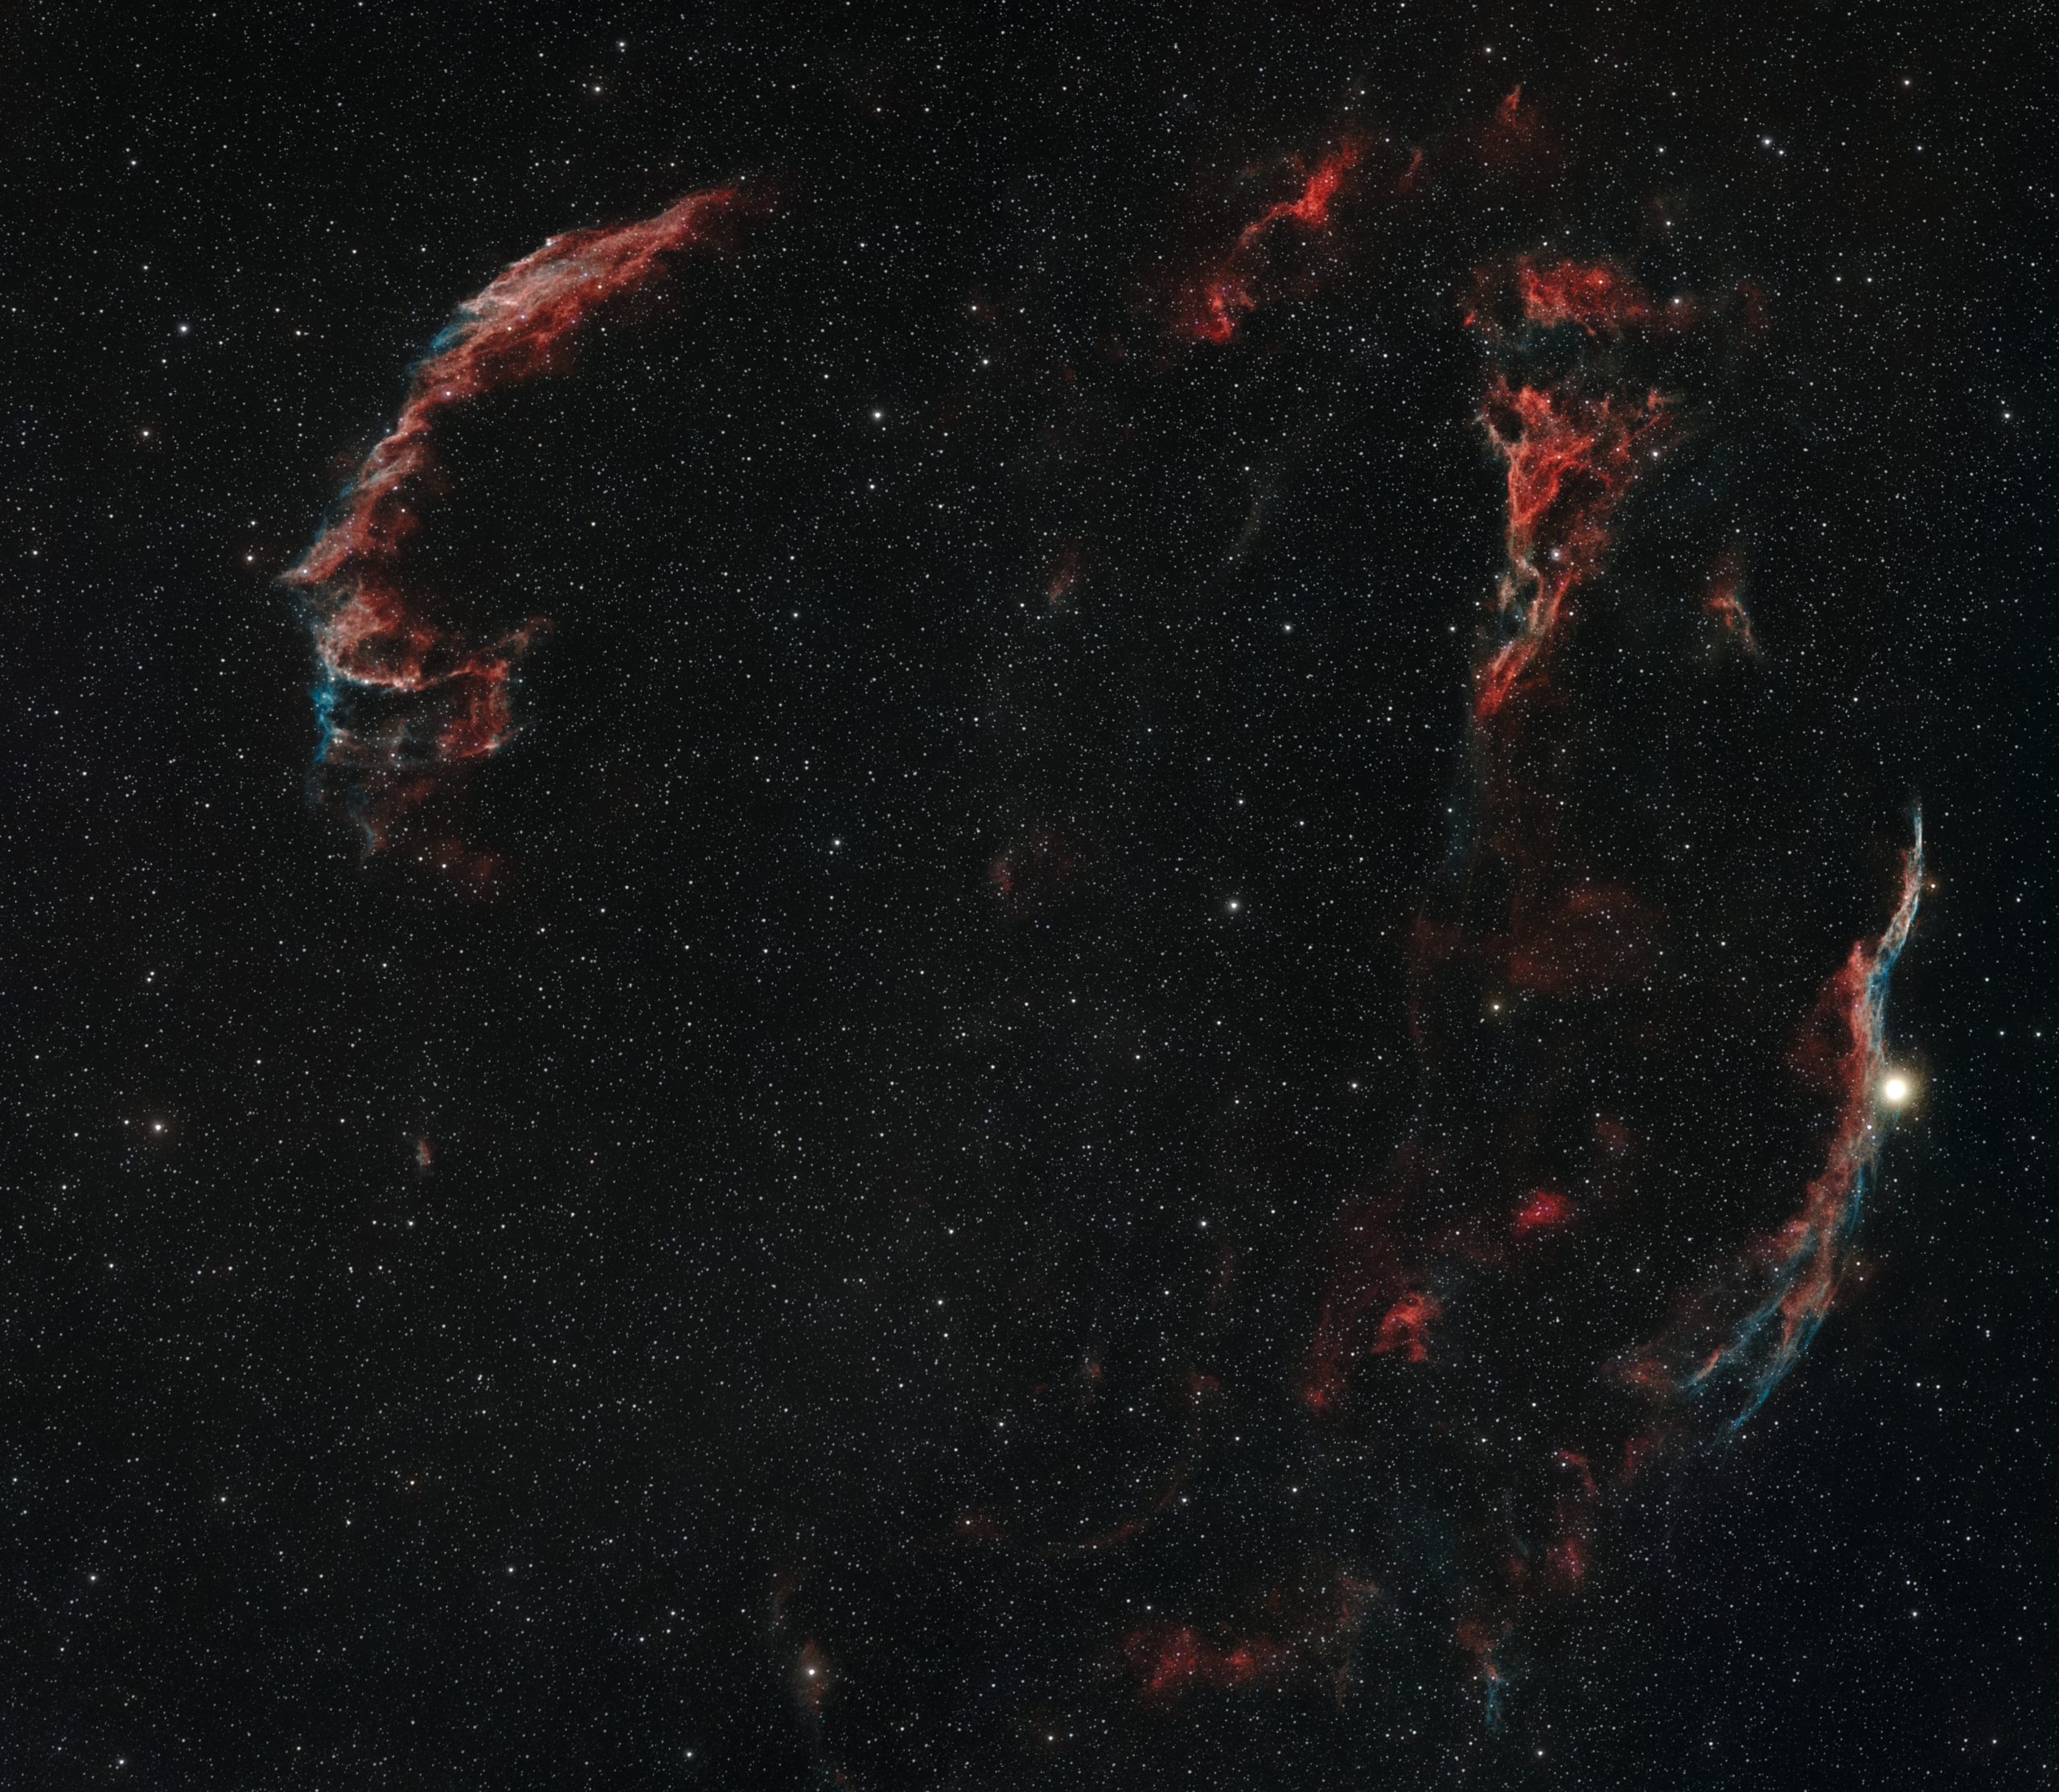 Veil Nebula*